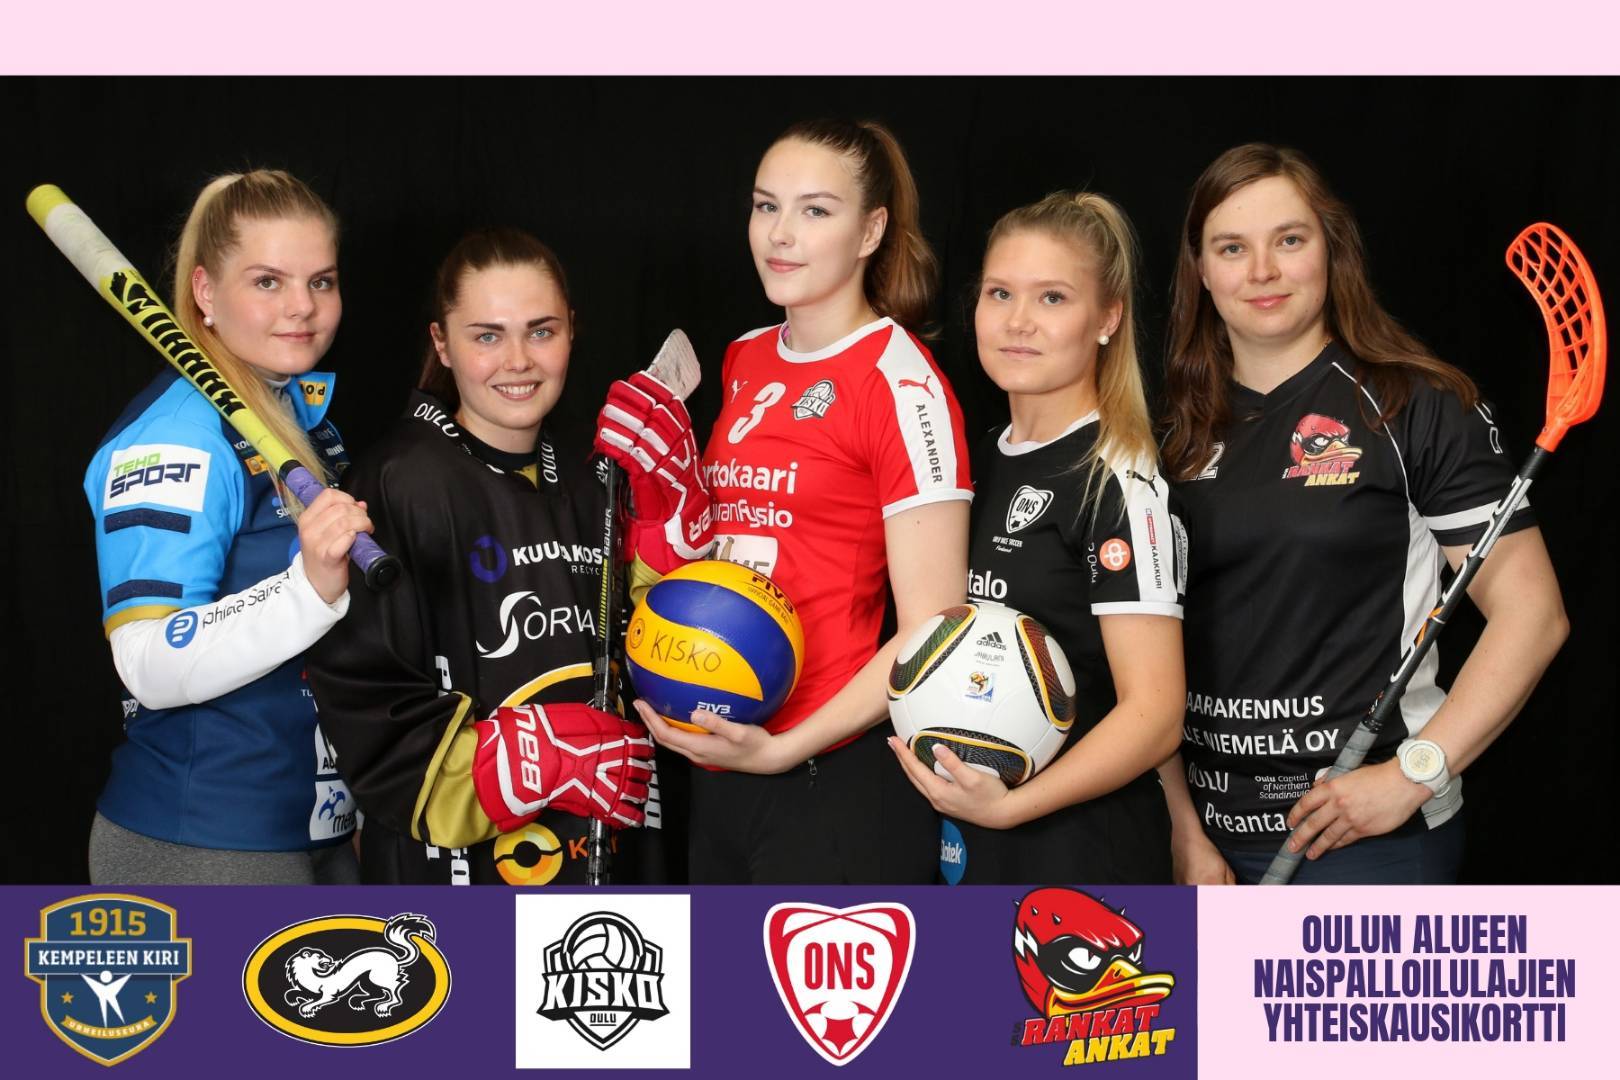 Oulun alueen naispalloilujoukkueiden yhteinen kausikortti